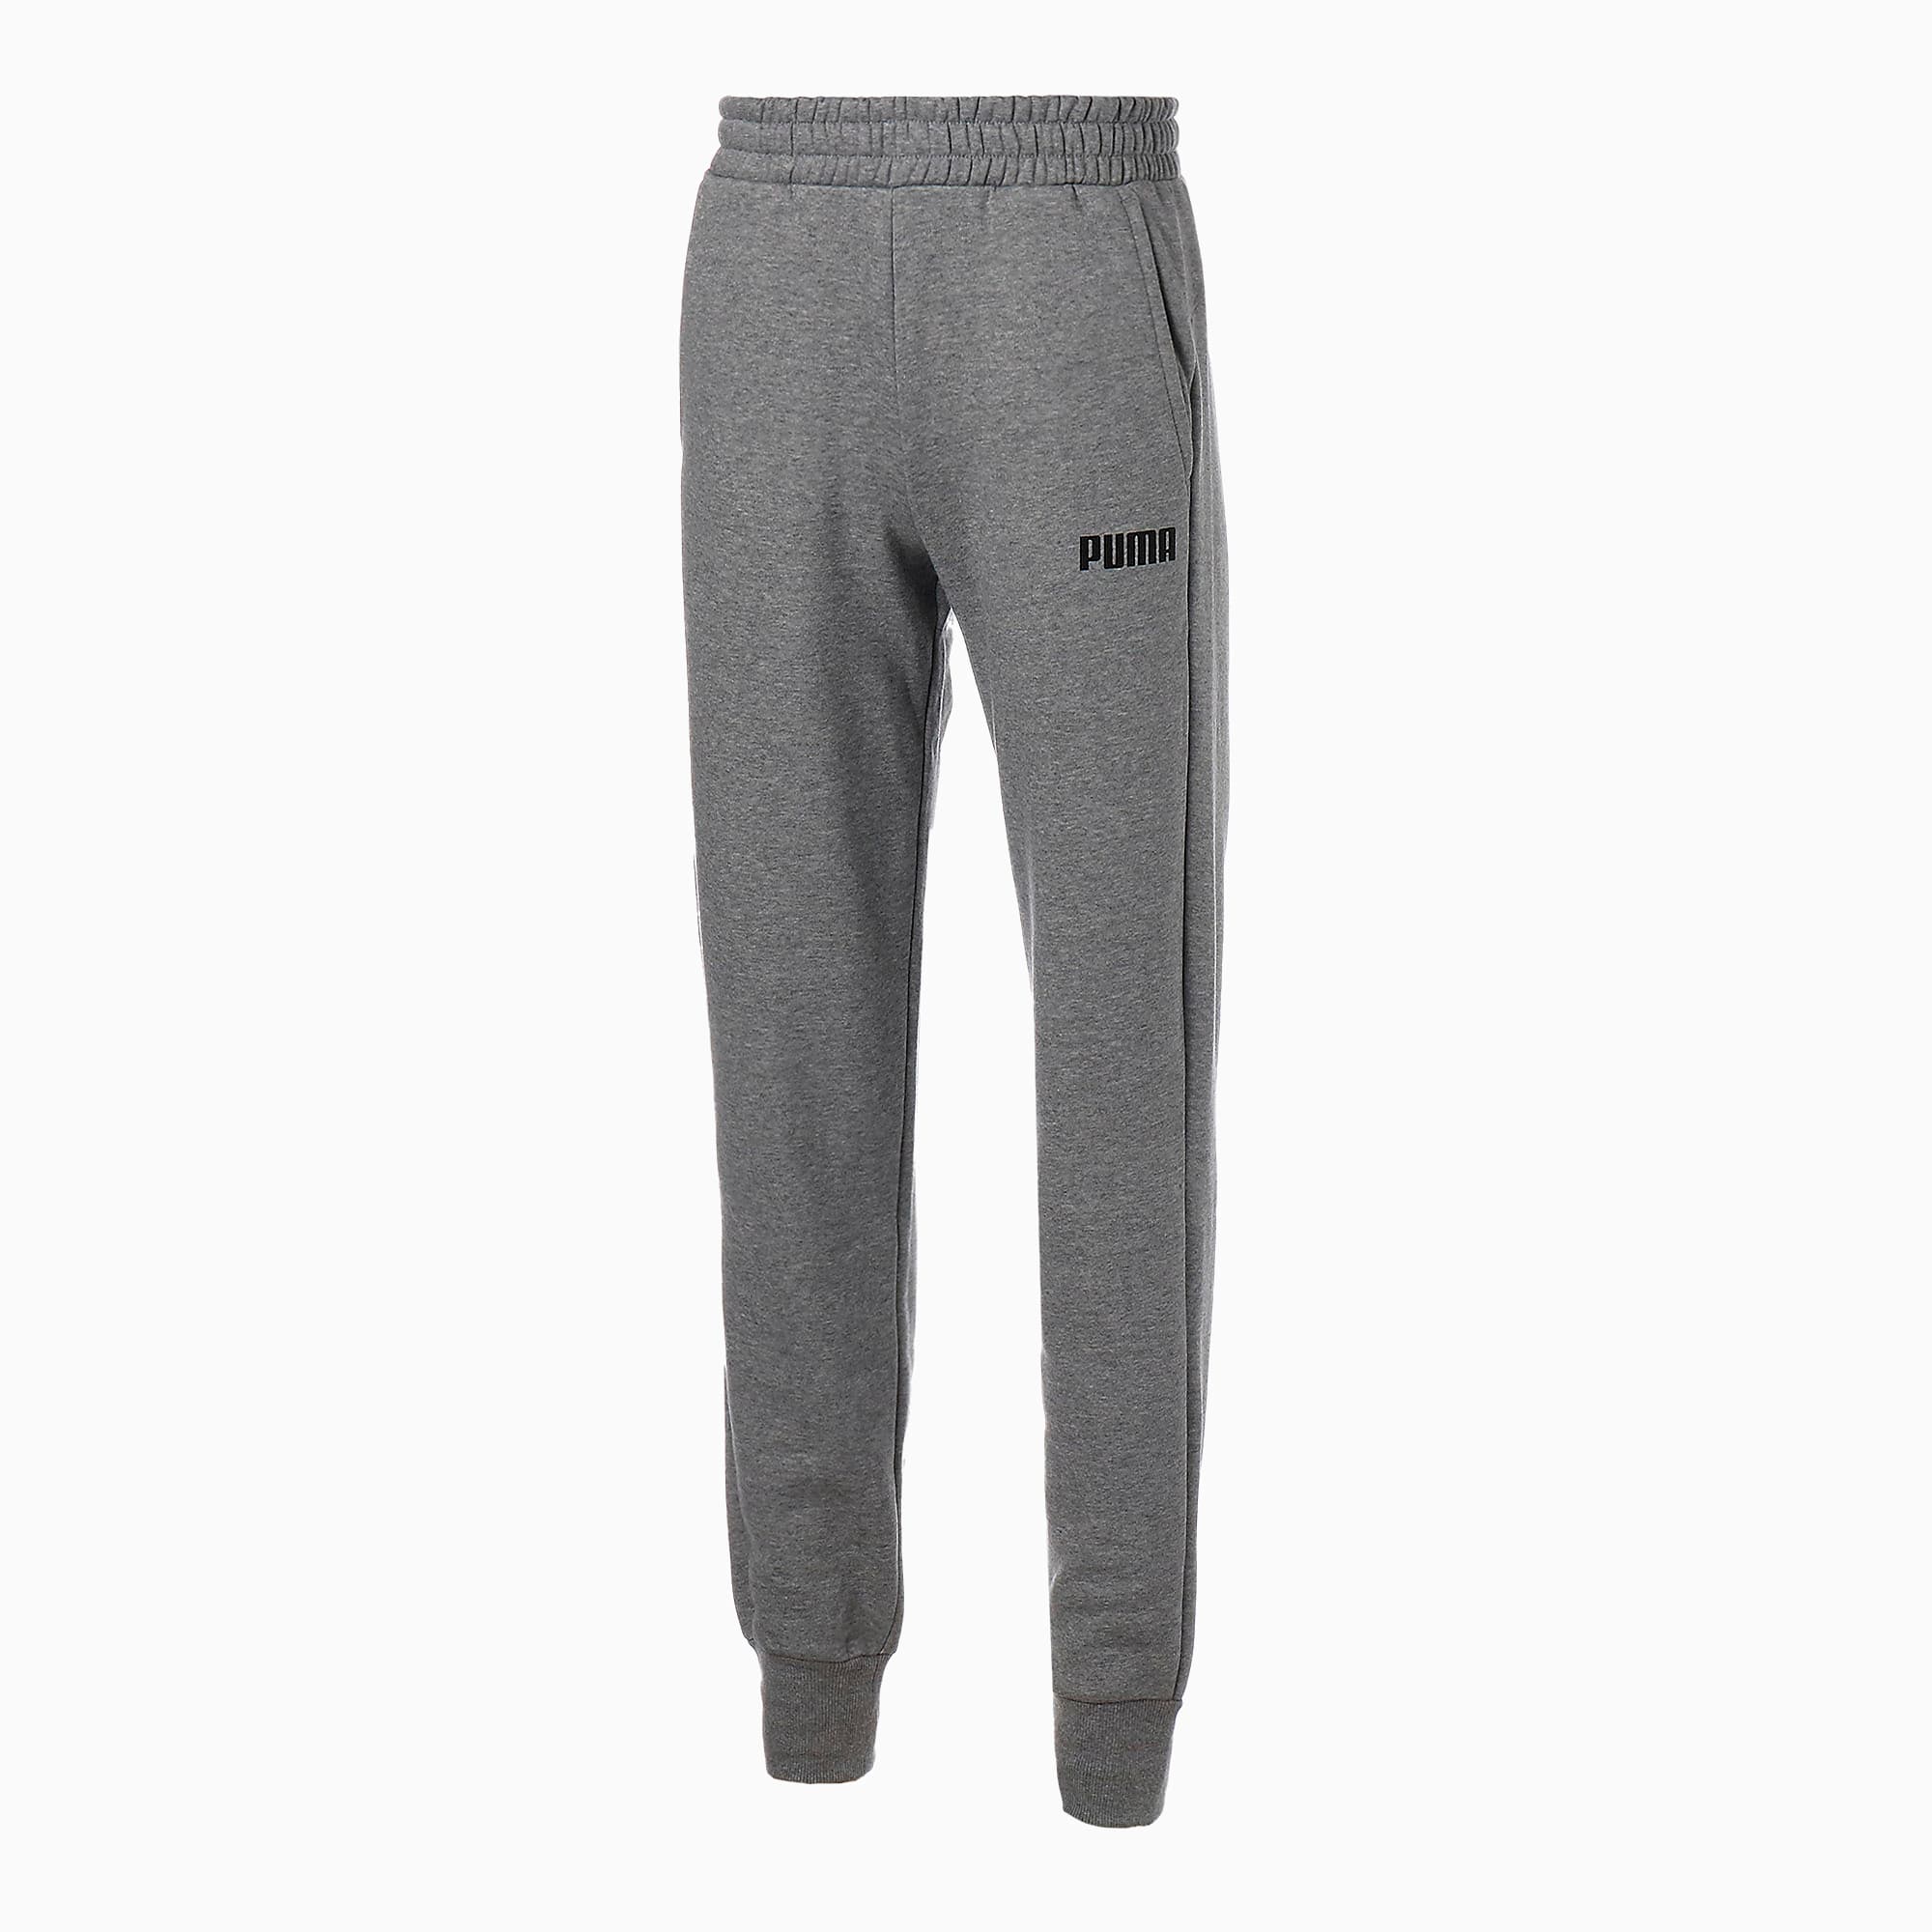 Essentials Men's Fleece Pants, Medium Gray Heather